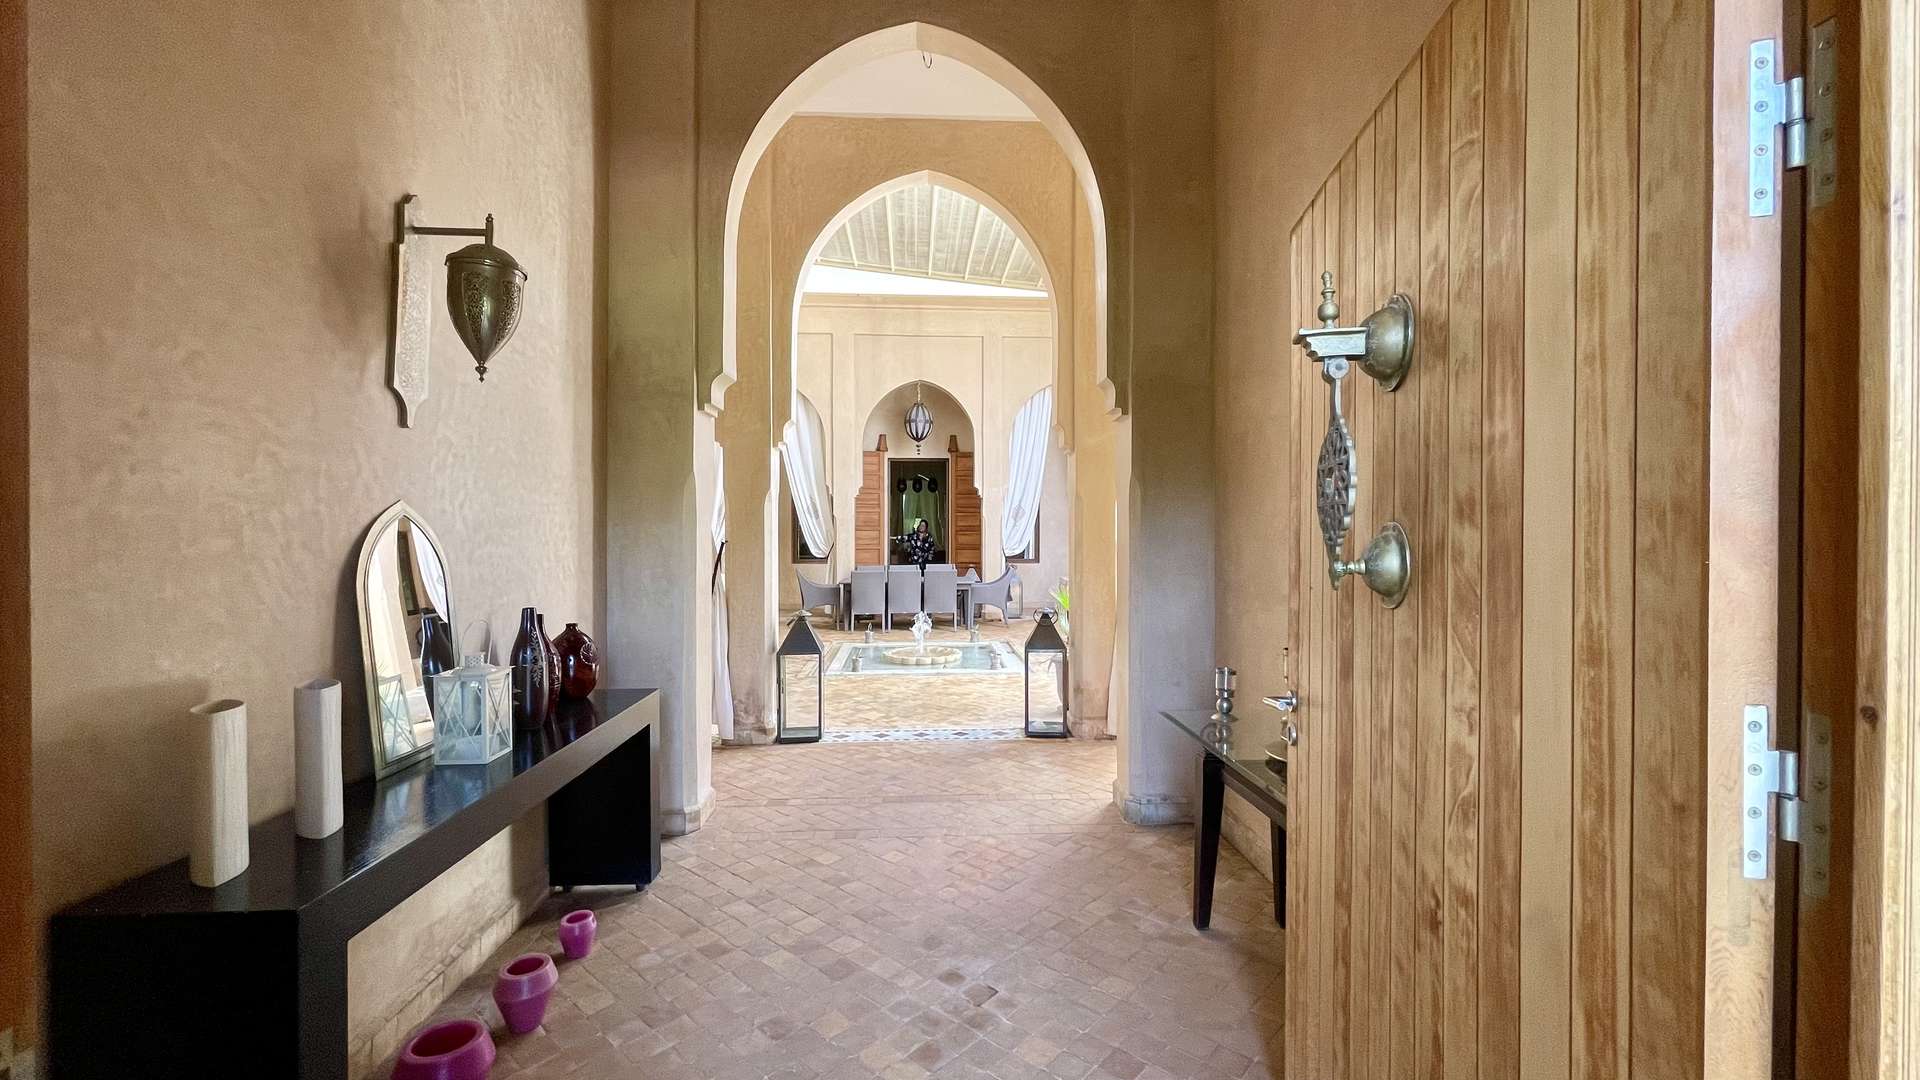 Location de vacances,Villa,Somptueuse Villa de style Riad de plain-pied 4 suites sur un parc de 4200M2,Marrakech,Route d'Ouarzazate